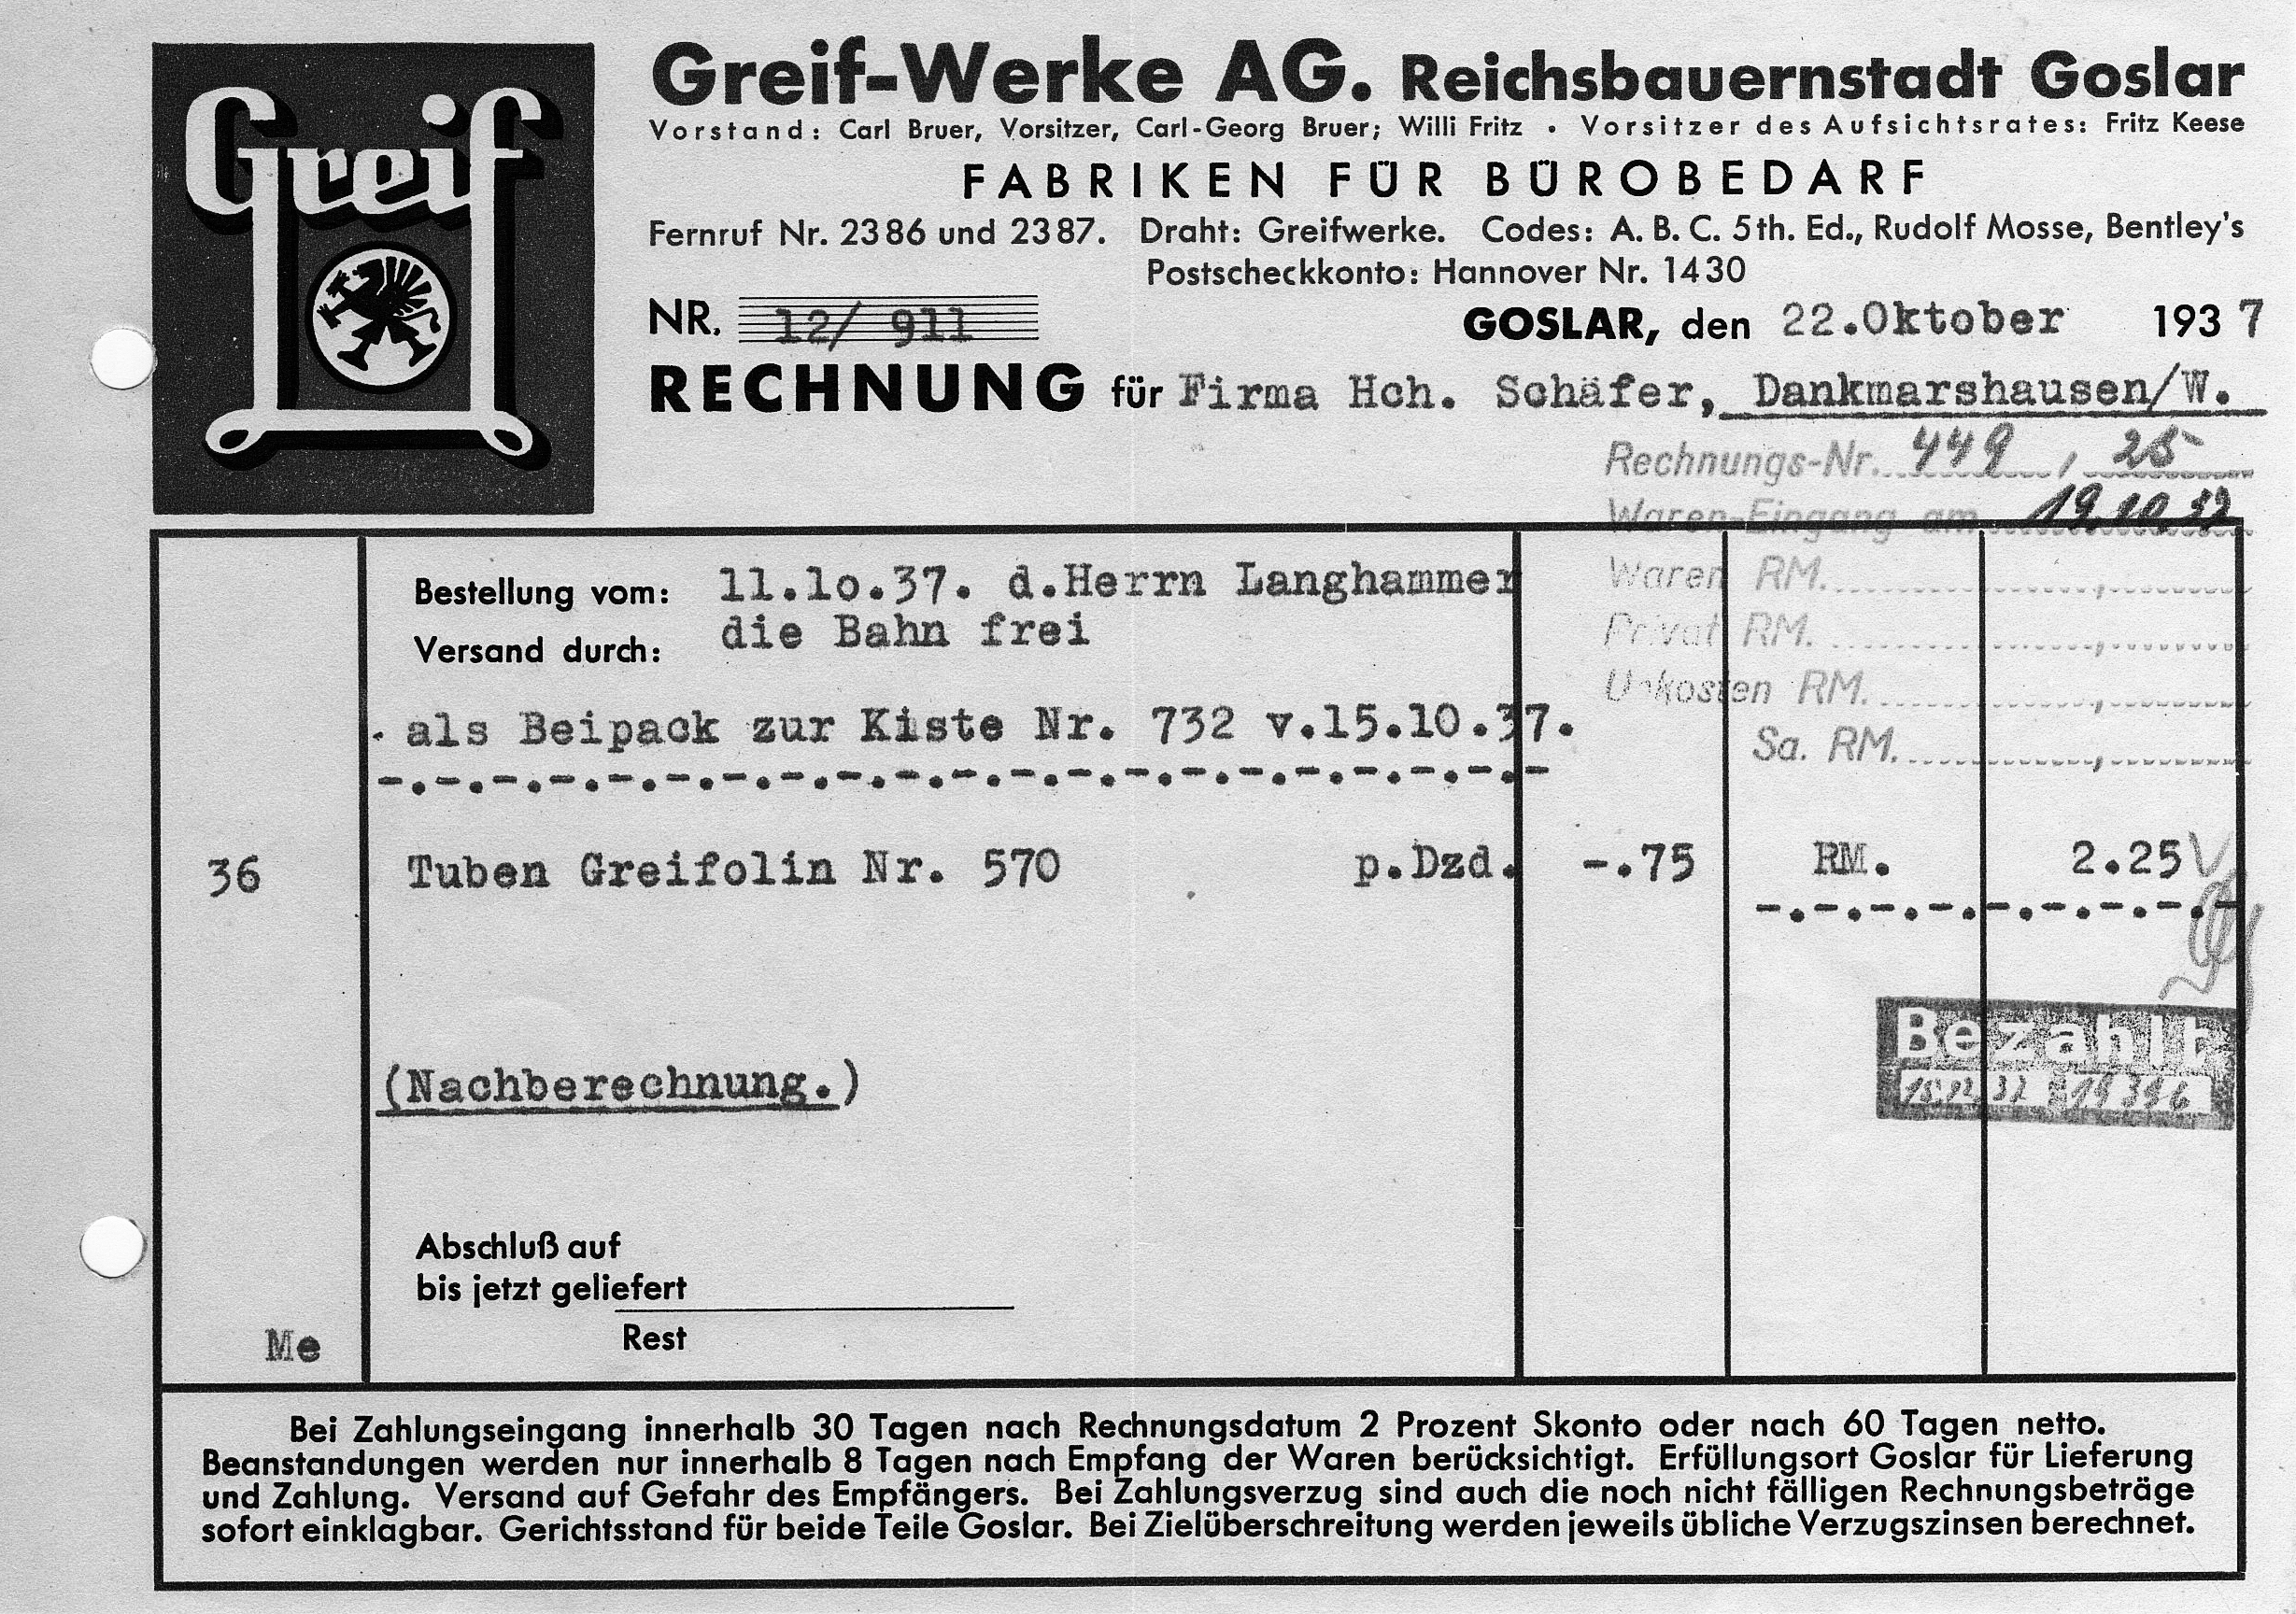 Vergleichs-Rechnung Greif-Werke AG vom 22.10.1937, Kauf von 3 Tuben Greifolin-Vervielfältigungsfarbe 2,75.- RM, Stückpreis 75 Pf., Privatbesitz